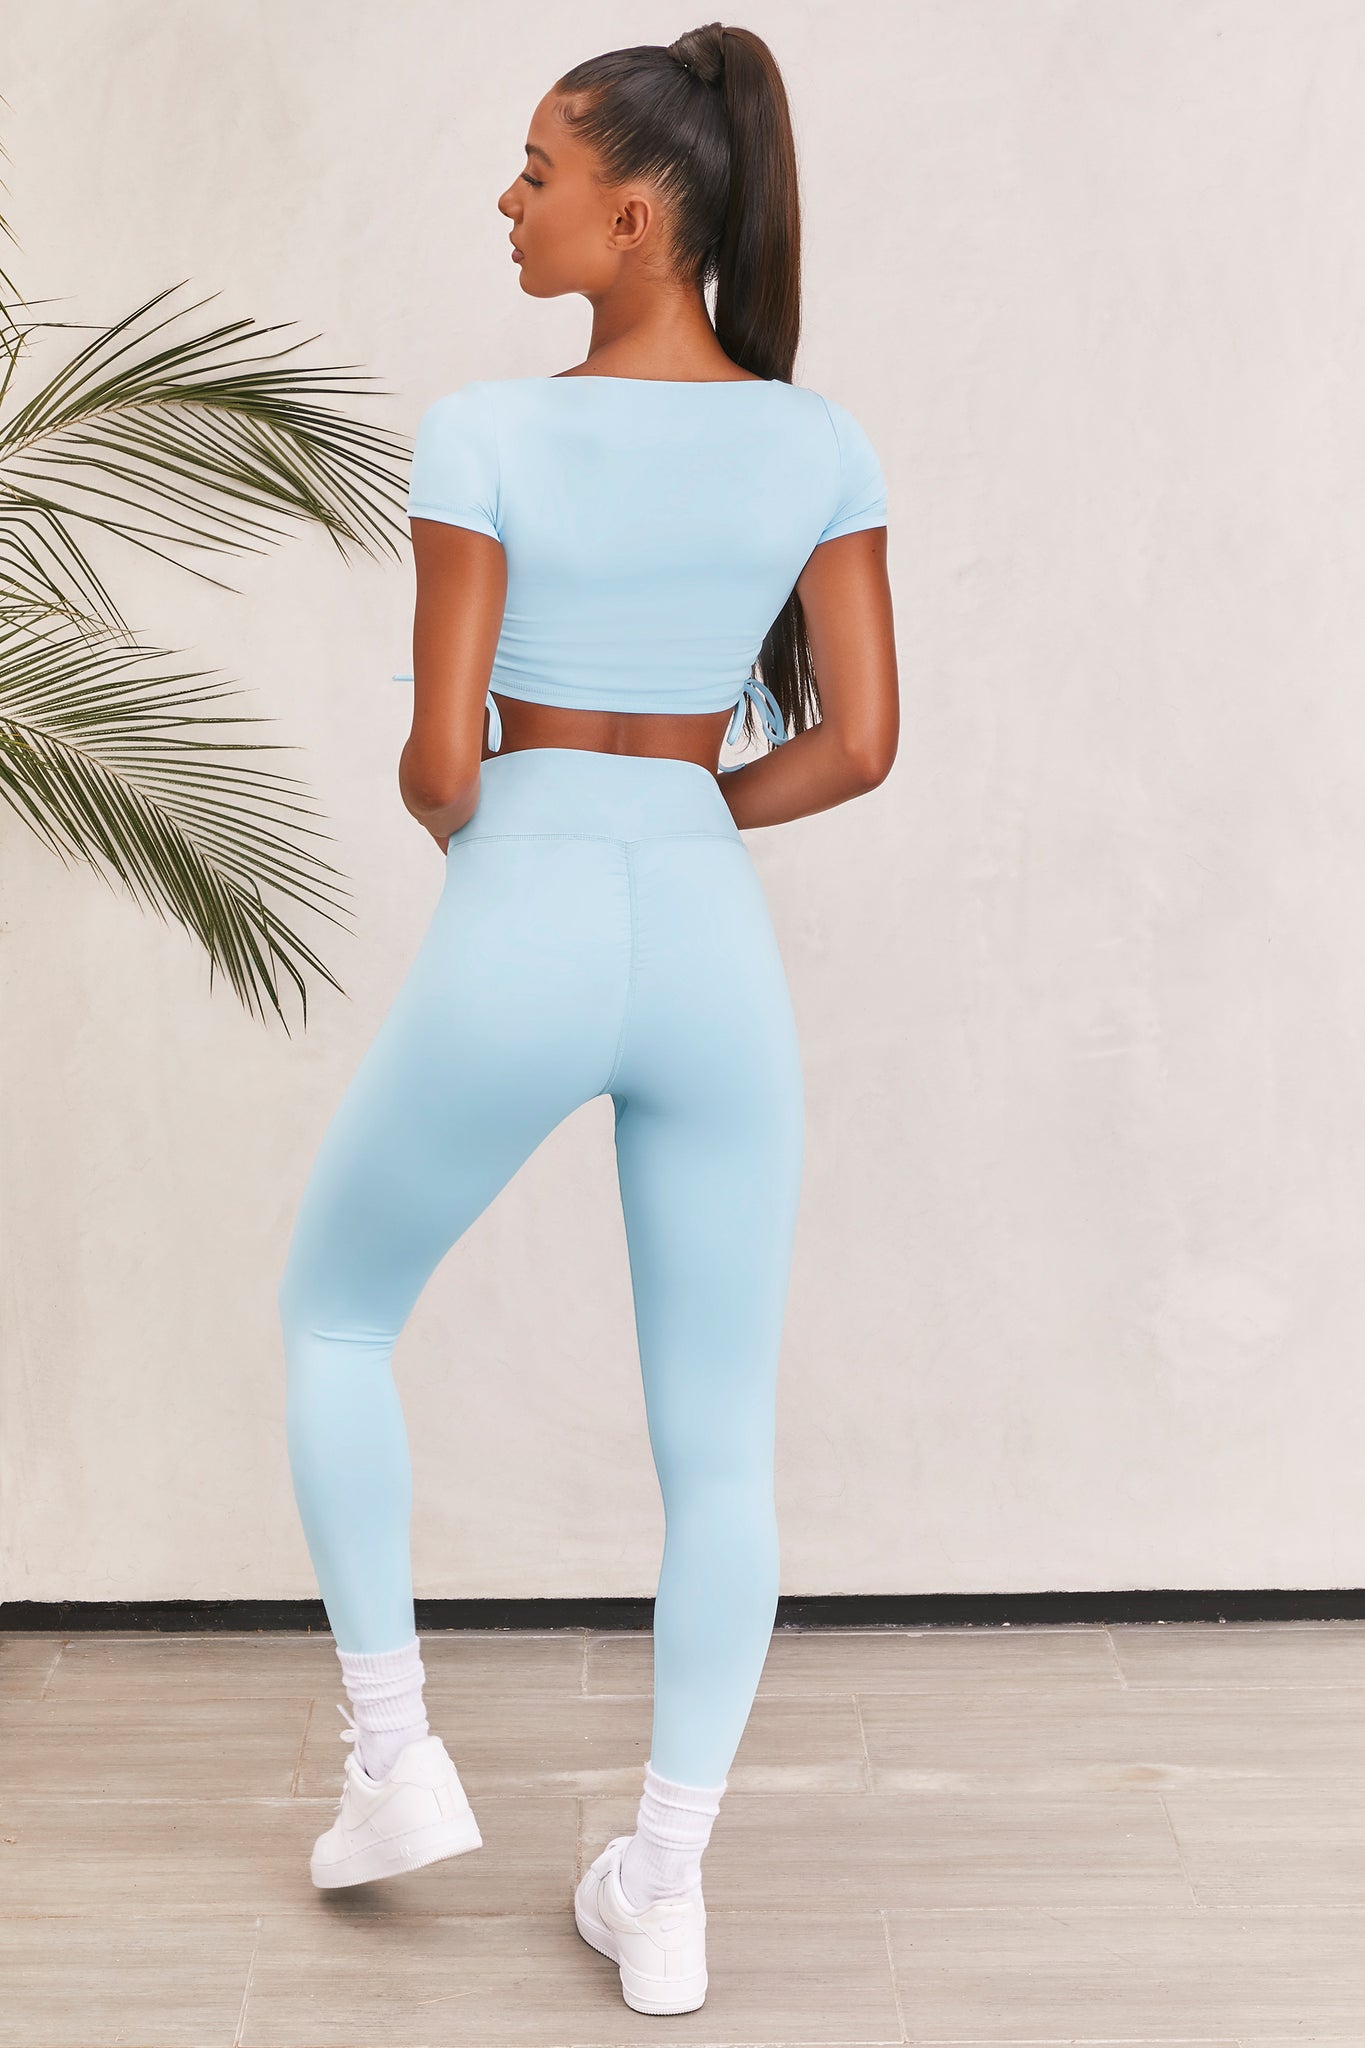 light blue gym leggings